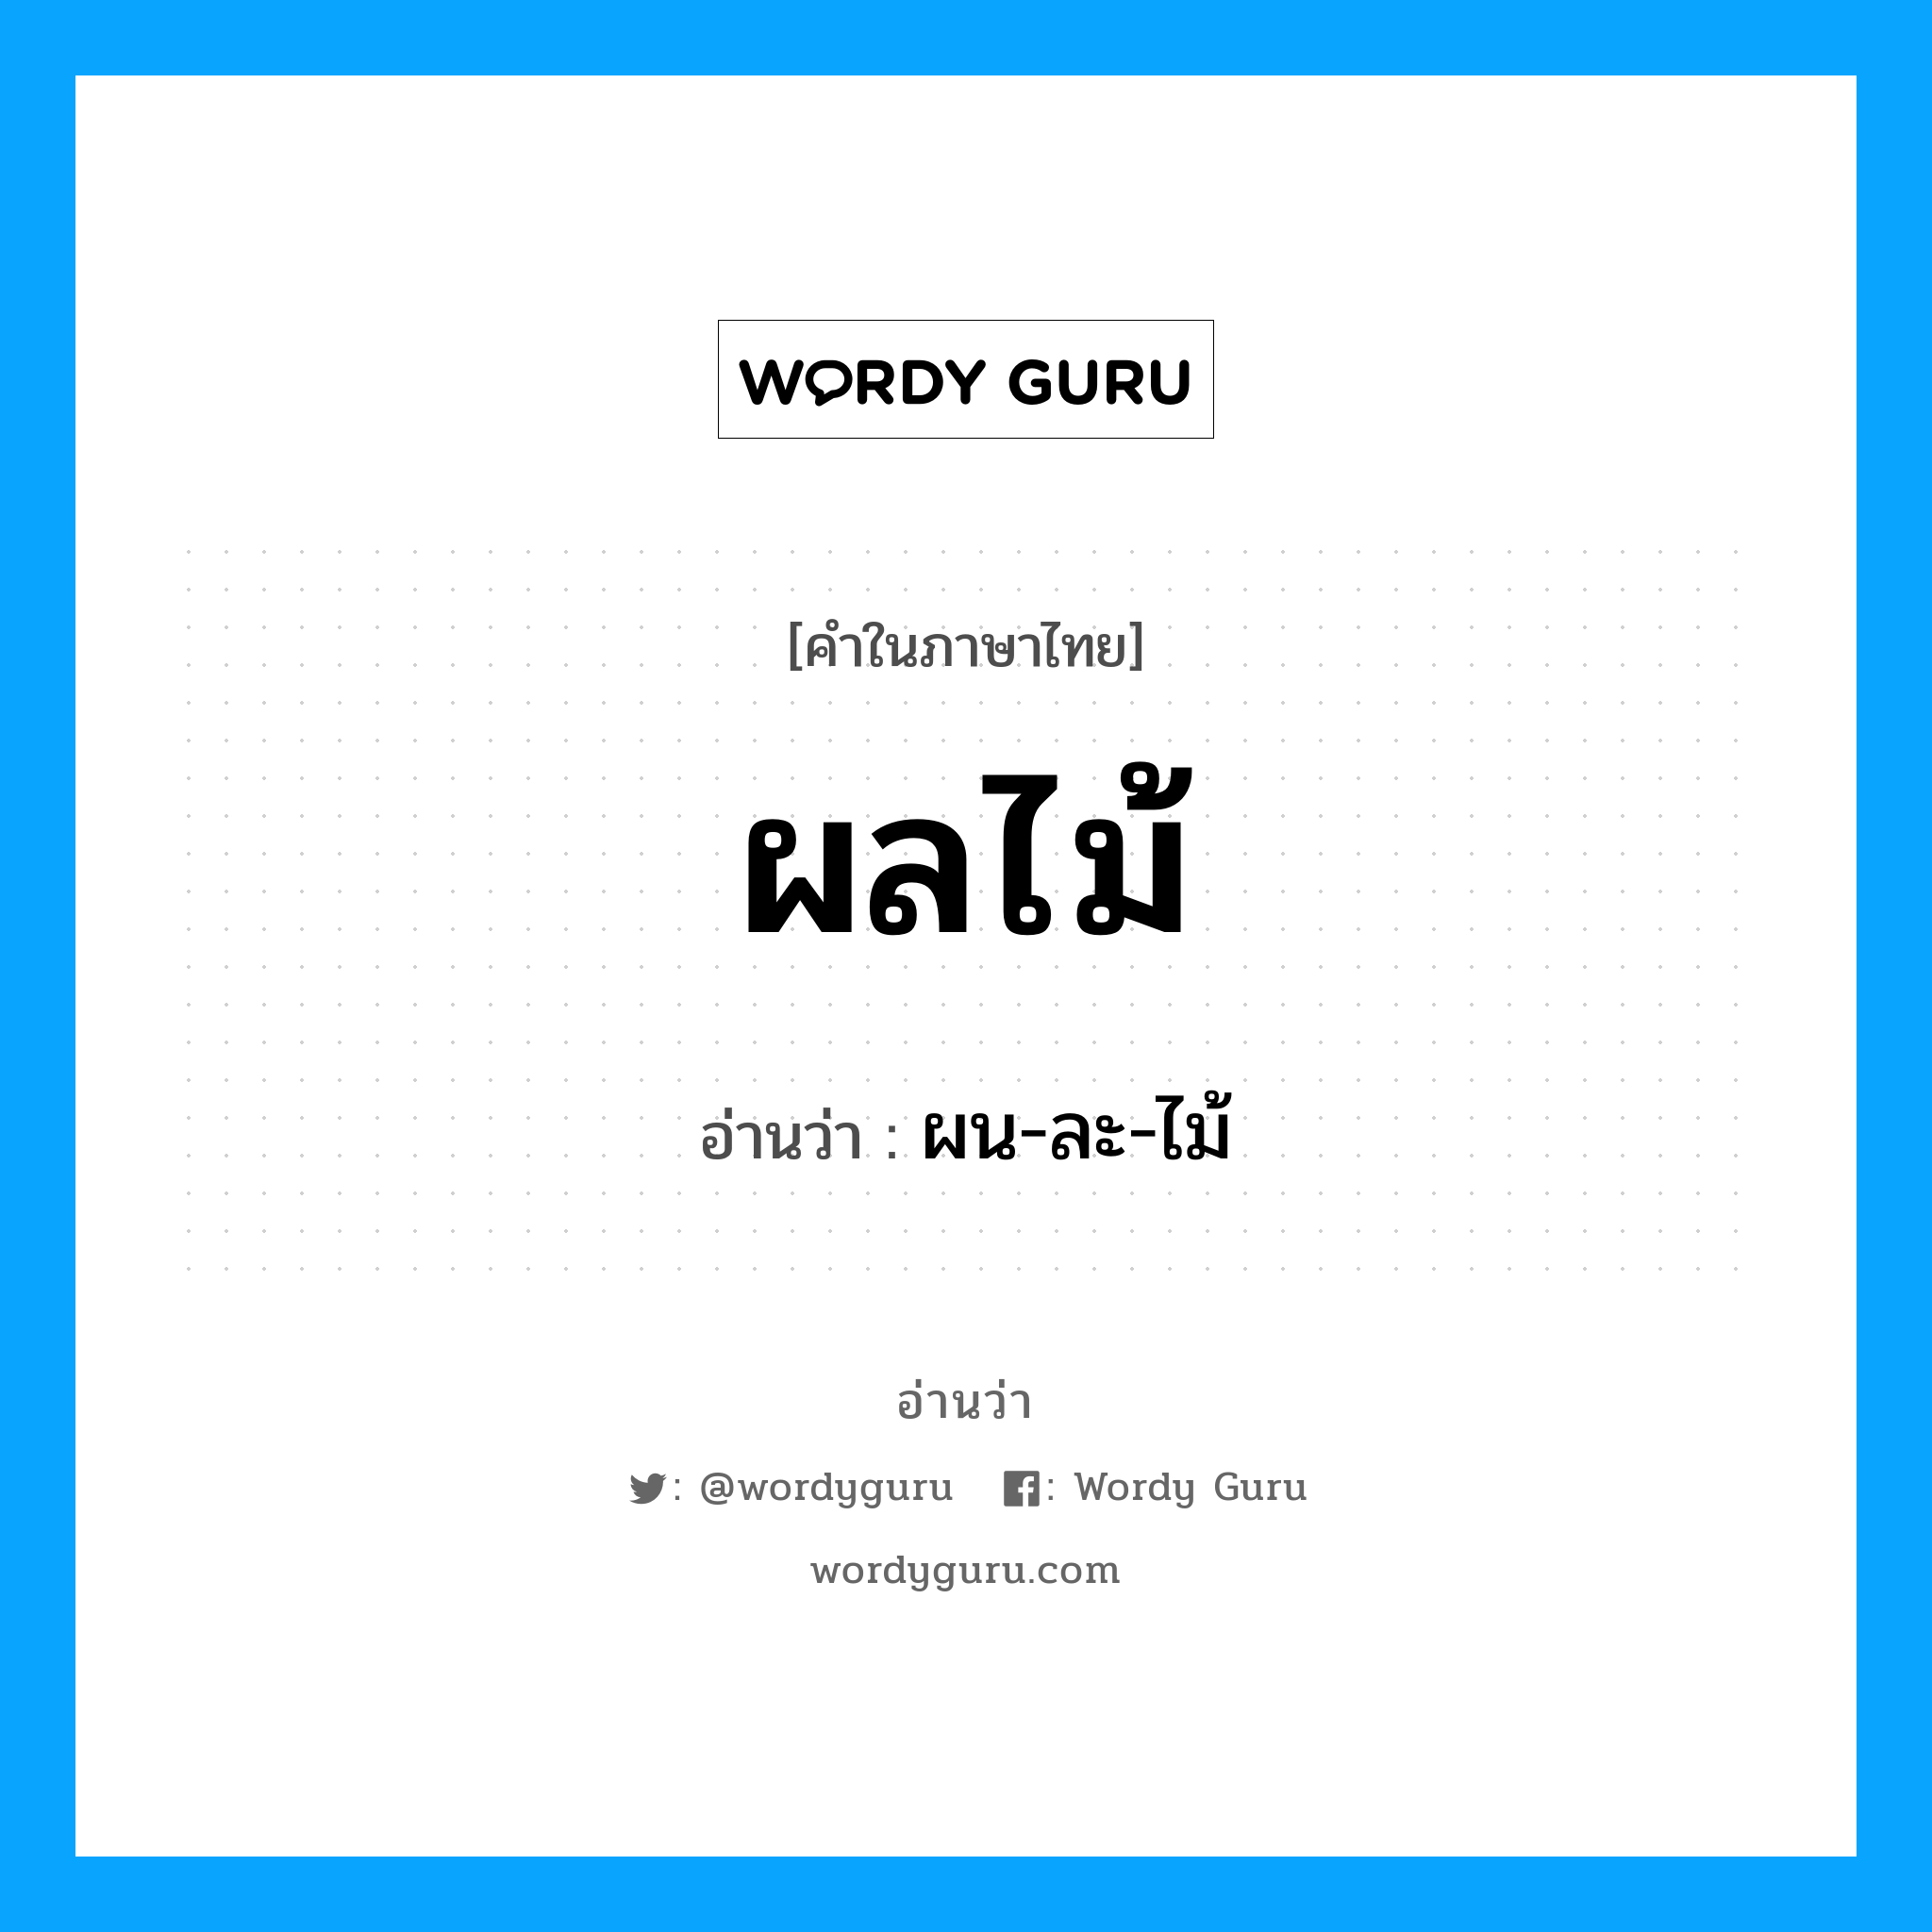 ผน-ละ-ไม้ เป็นคำอ่านของคำไหน?, คำในภาษาไทย ผน-ละ-ไม้ อ่านว่า ผลไม้